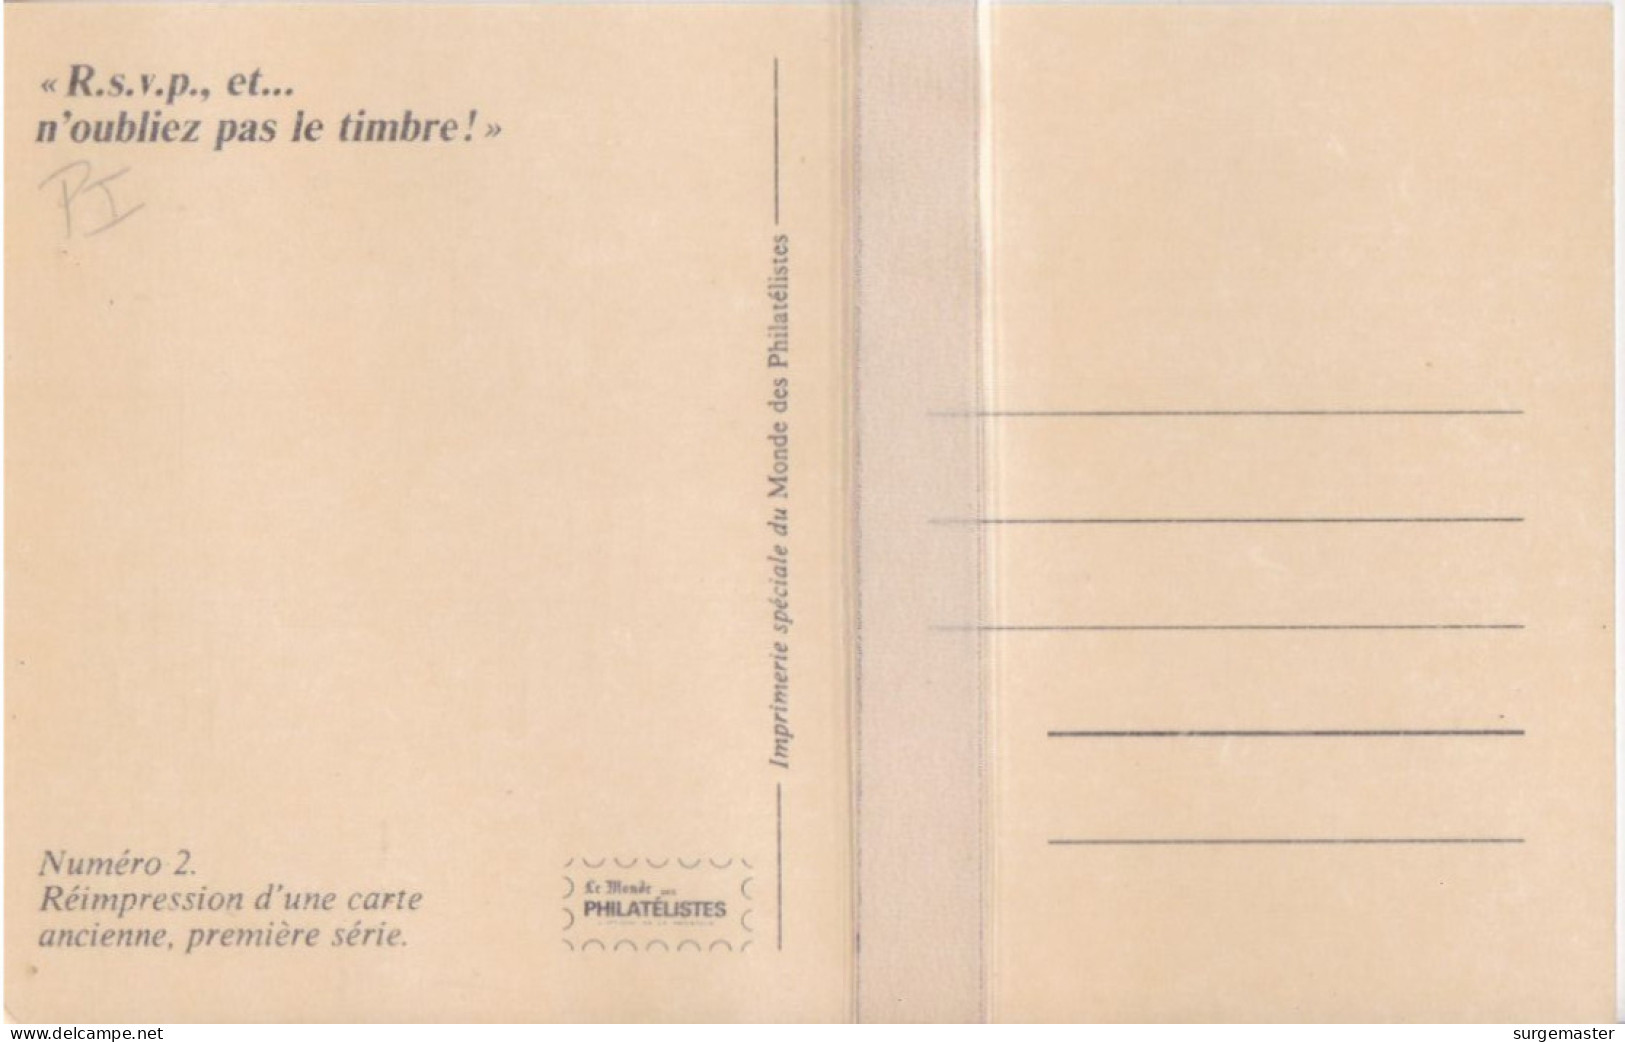 CPA REIMPRESSION D'UNE CARTE ANCIENNE '' R.S.V.P. N'OUBLIEZ PAS LE TIMBRE'' - Stamps (pictures)